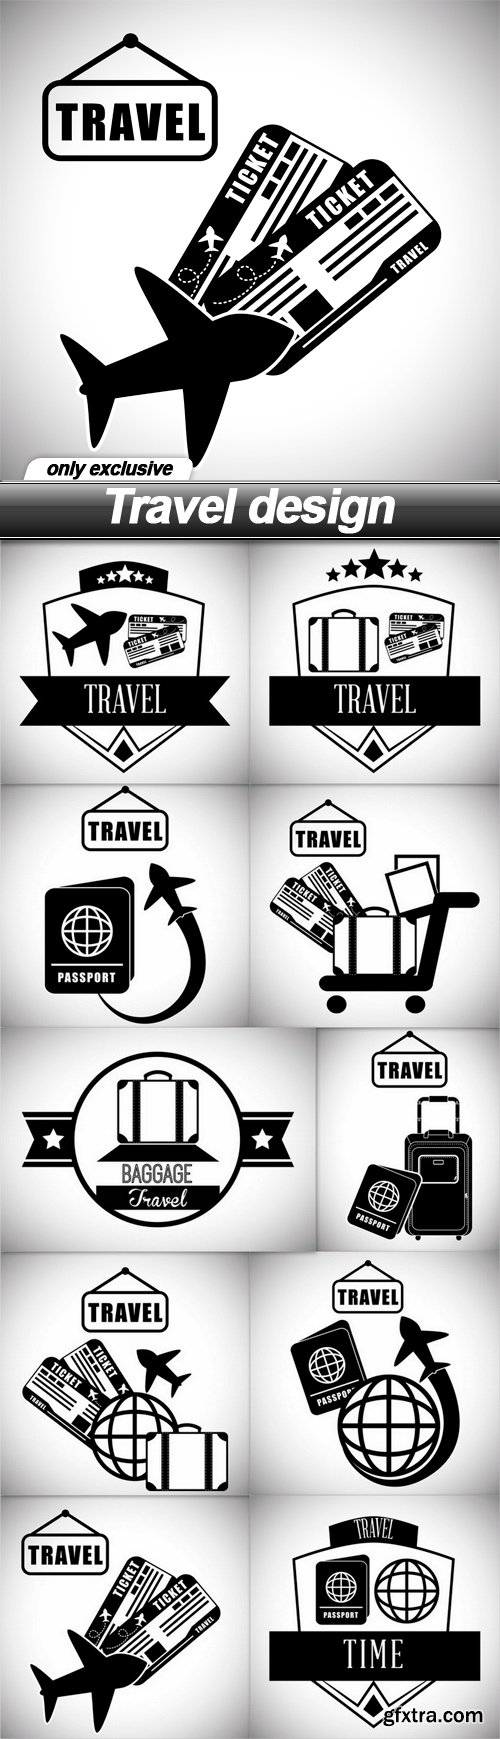 Travel design - 10 EPS